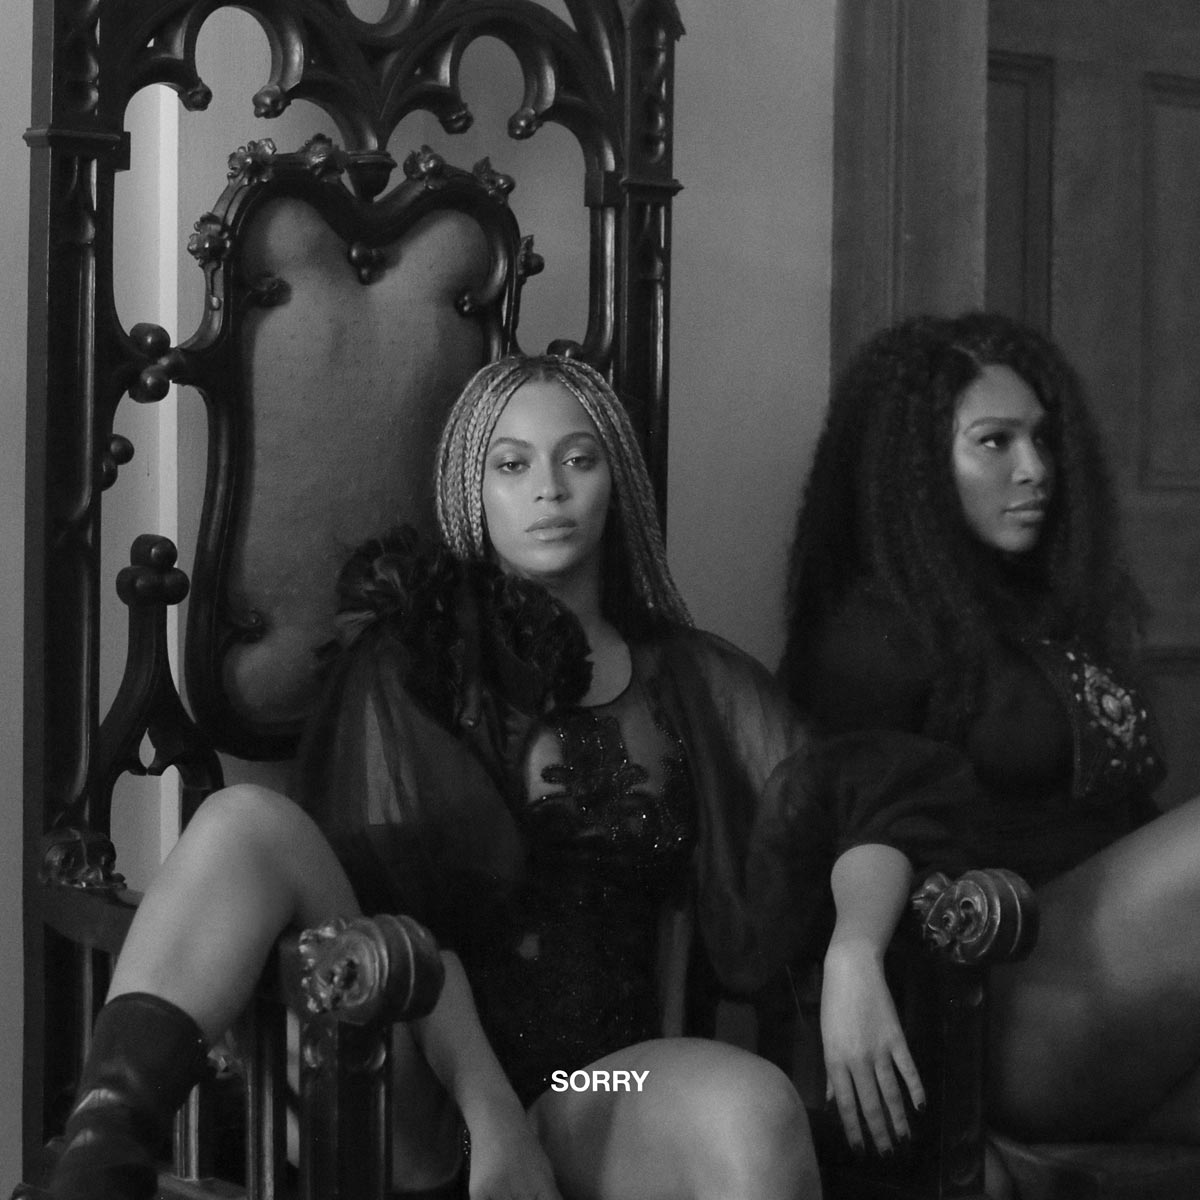 Beyoncé: Sorry, la portada de la canción